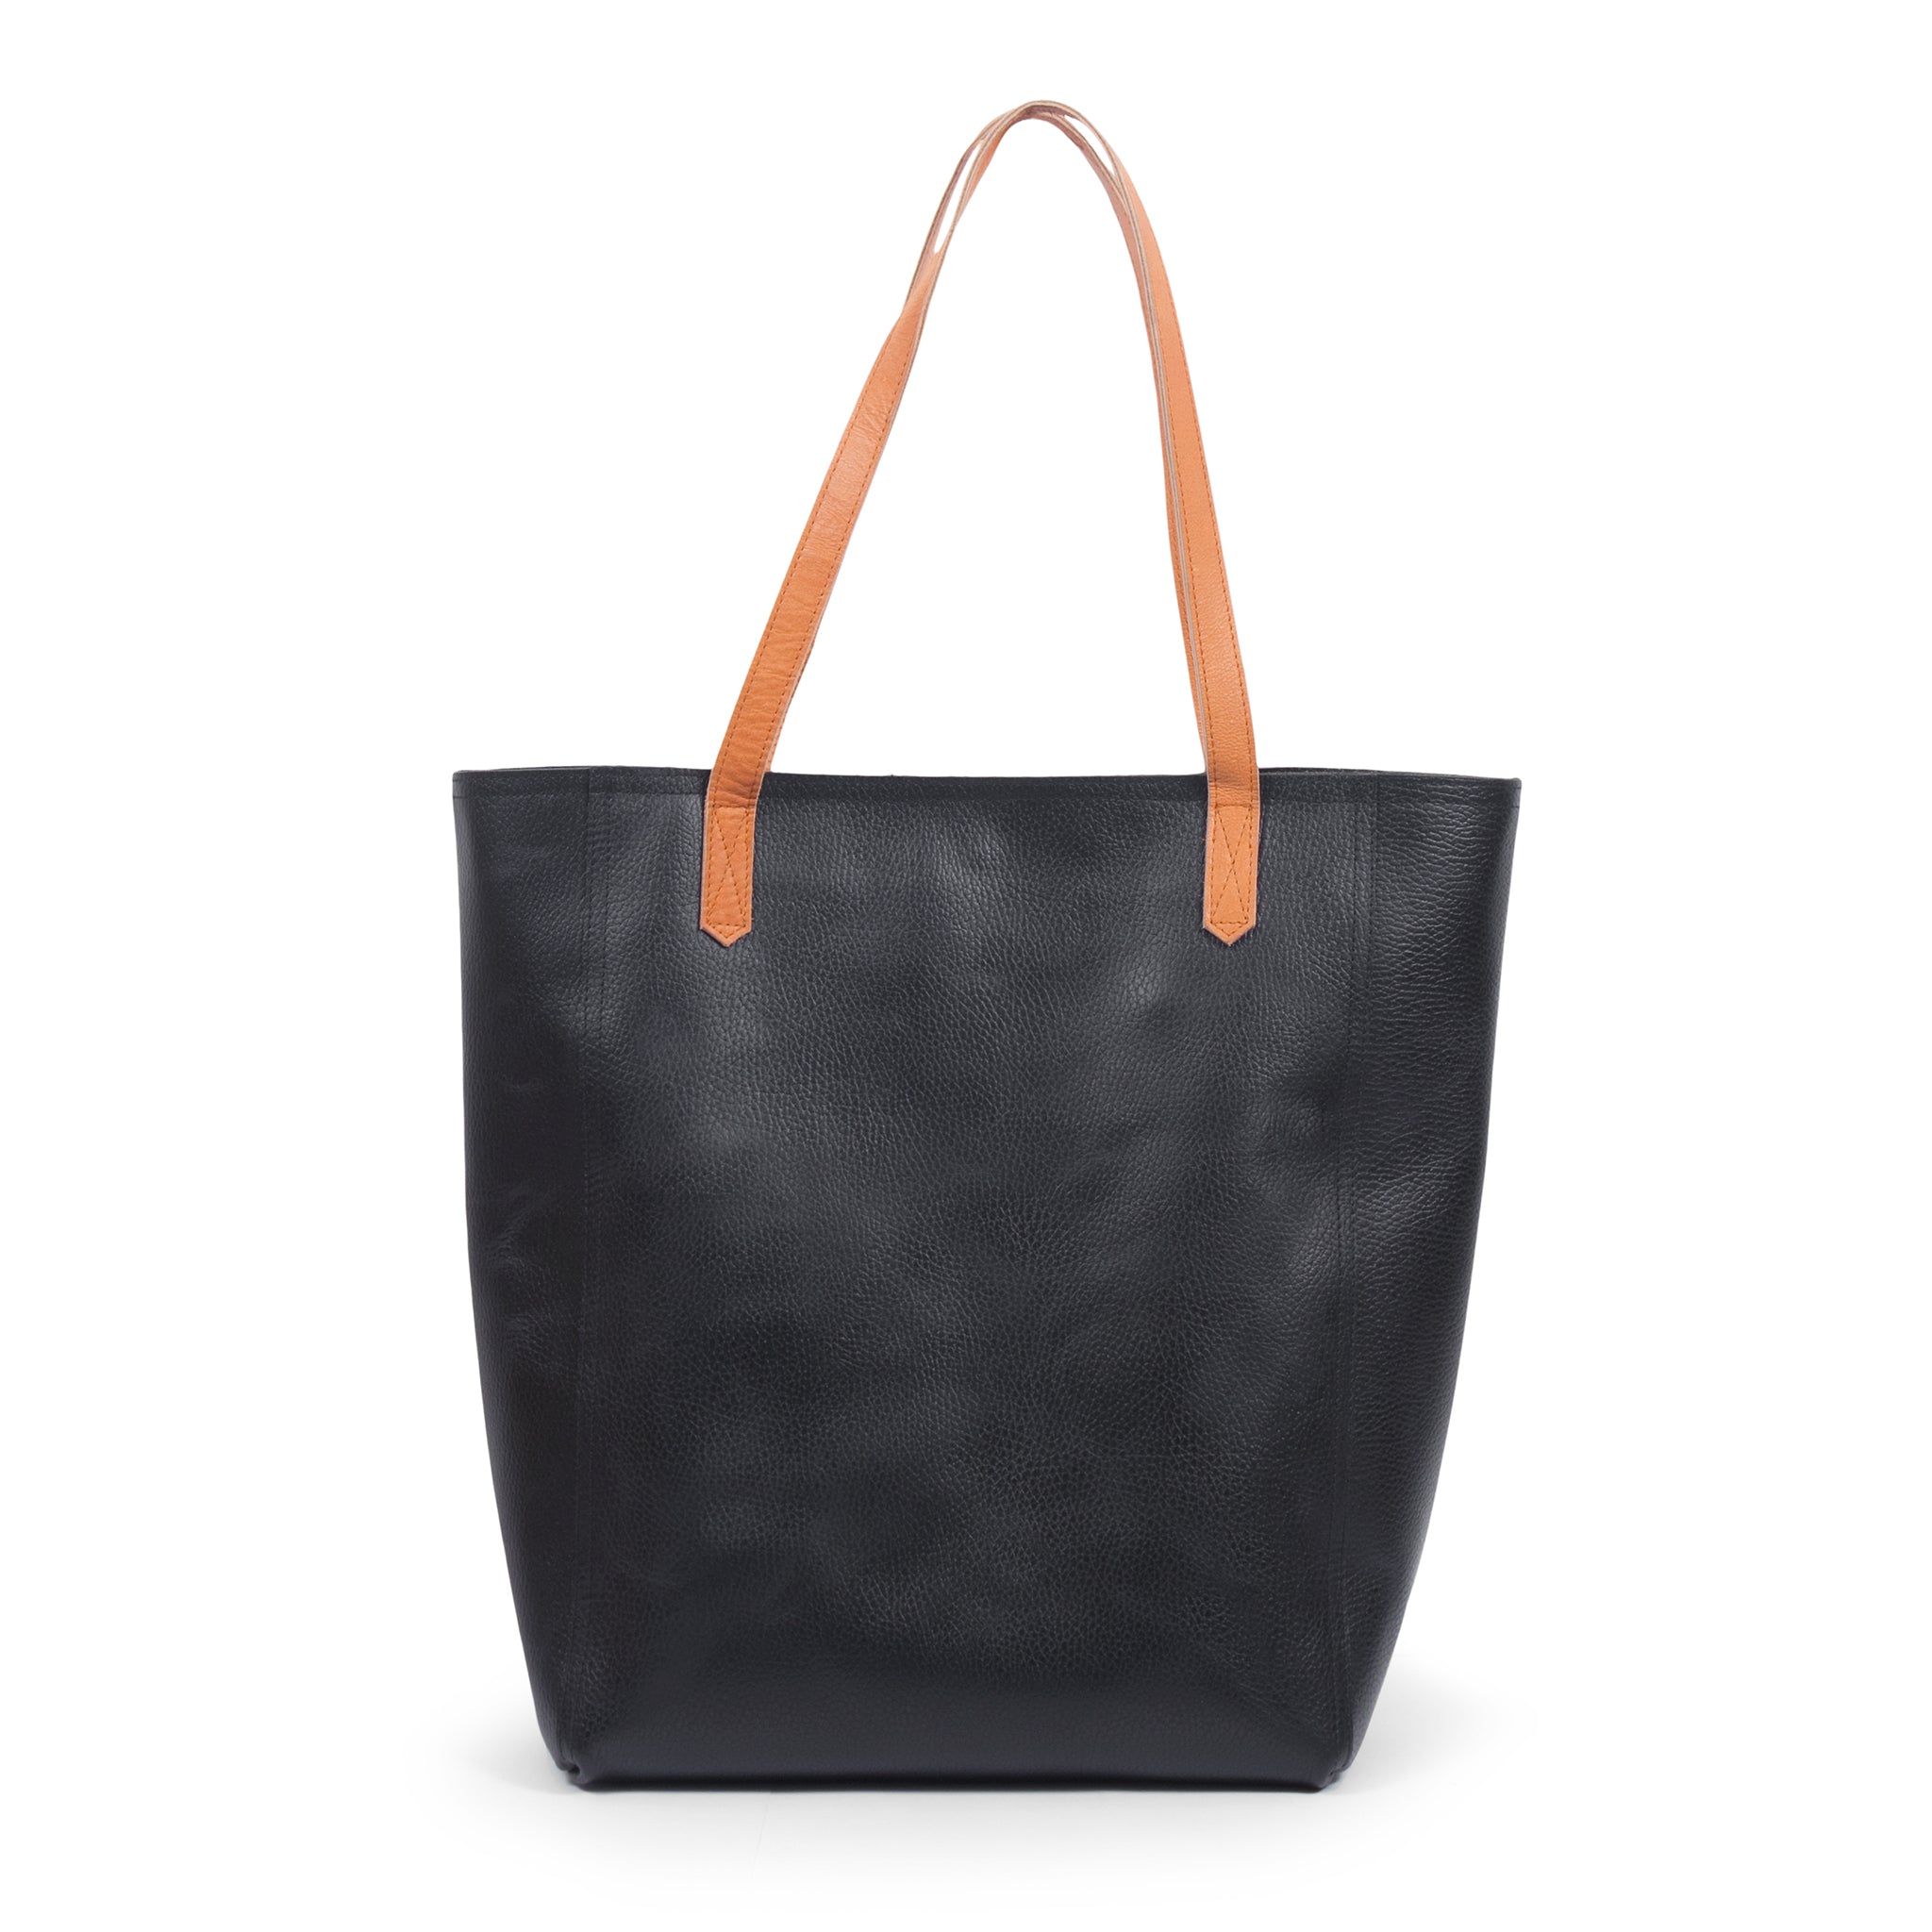 Leather Black Shopper Tote Handbag for Women, Shoulder Bag 